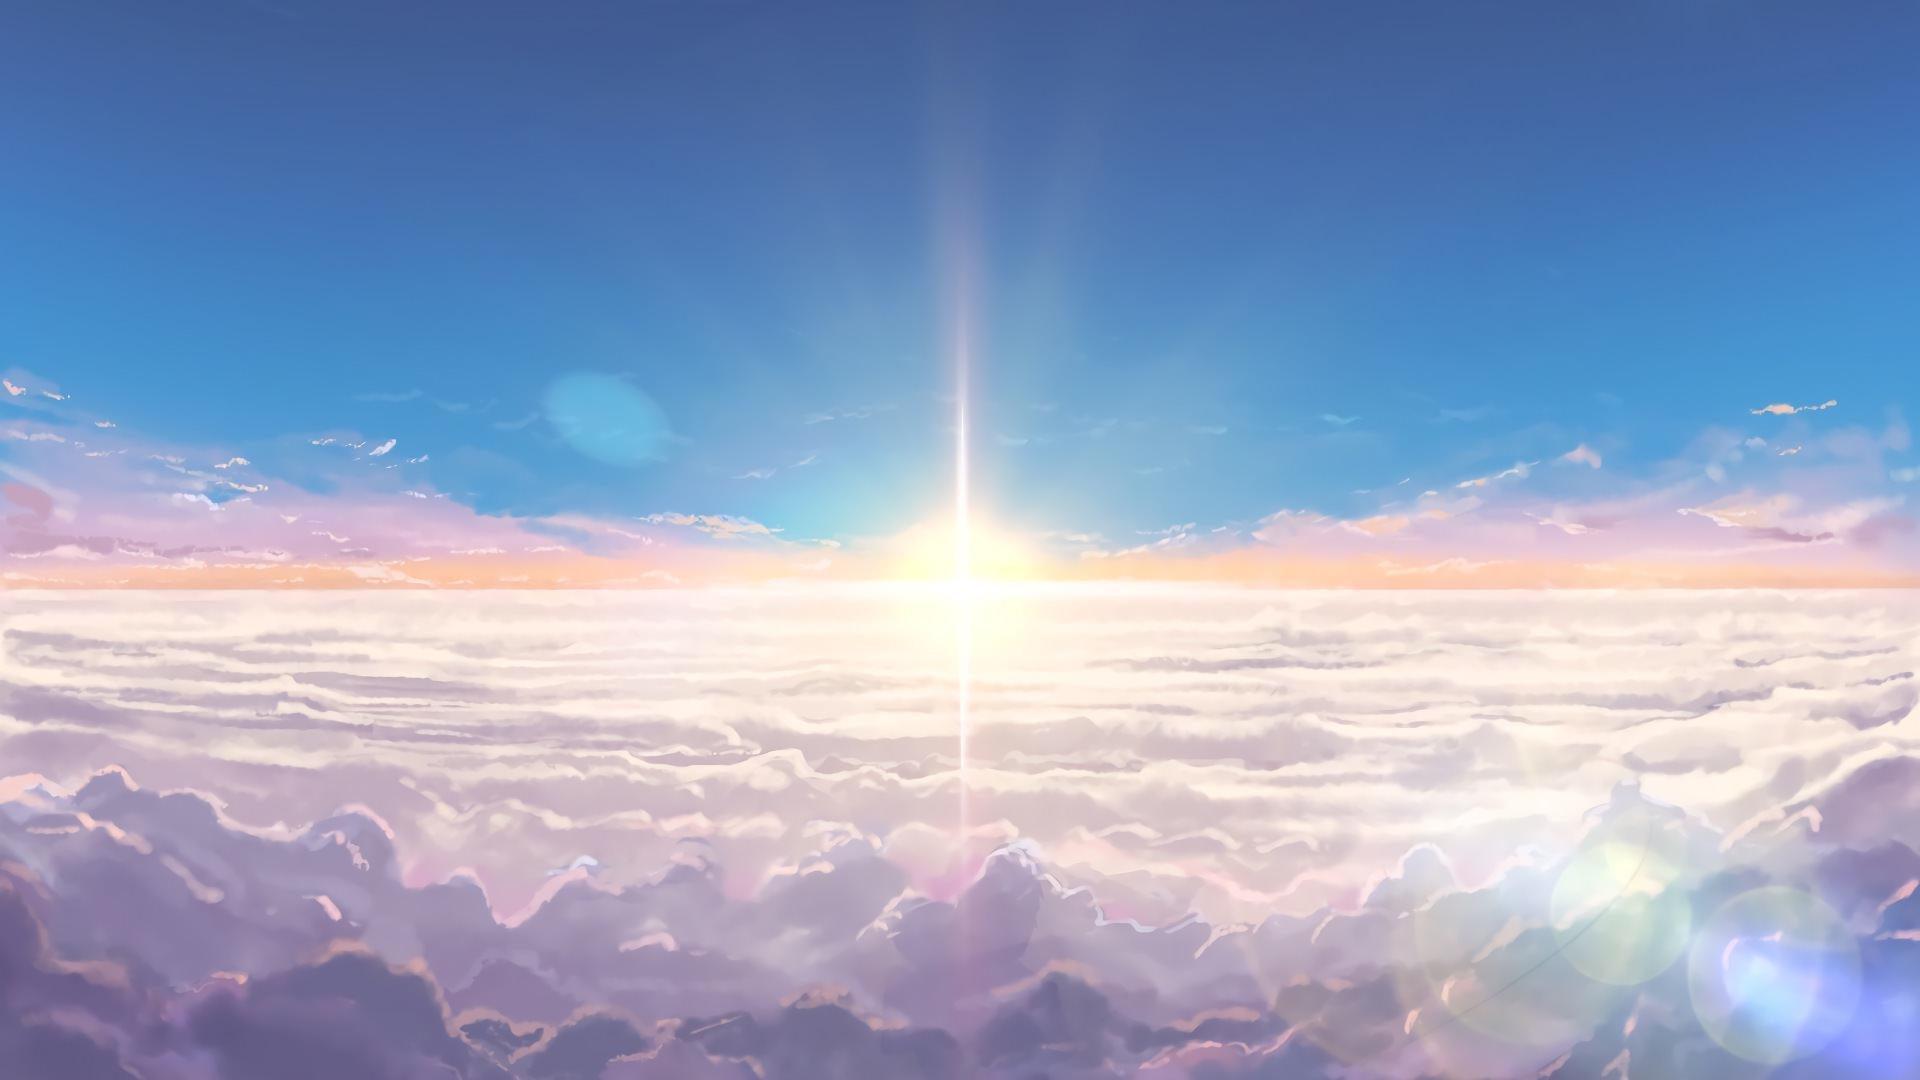 Hình nền anime buổi sáng: Khám phá bầu trời xanh trong bức tranh anime buổi sáng tươi trẻ này! Mặt trời ló rạng rỡ trên đường phố, những nhân vật anime hồn nhiên cùng đồng hành cùng bạn trong một ngày mới đầy những điều may mắn và thành công!